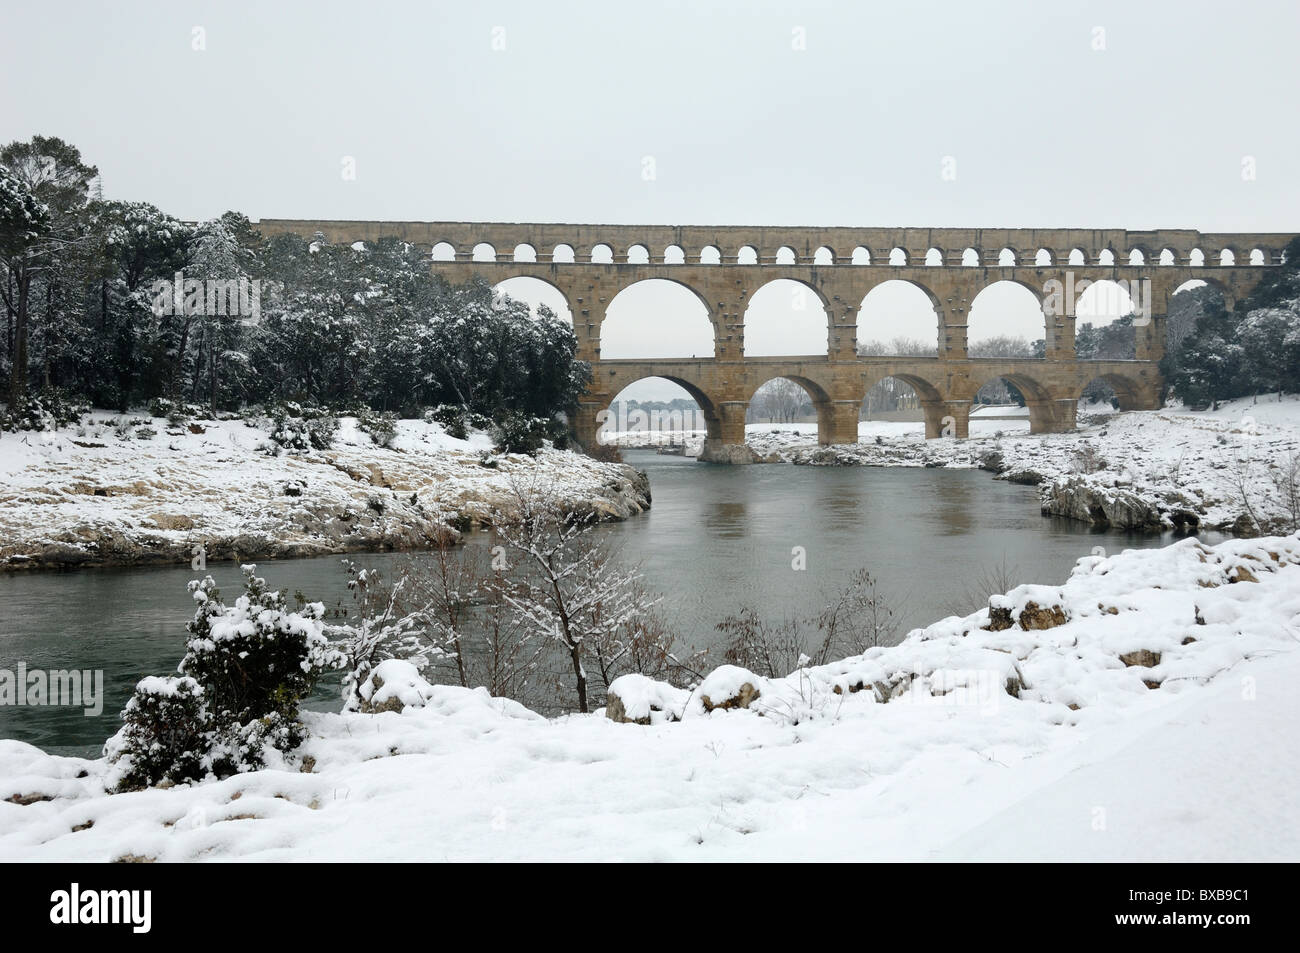 Pont du Gard aqueduc romain sous la neige, près de Remoulins, Nîmes, France Banque D'Images